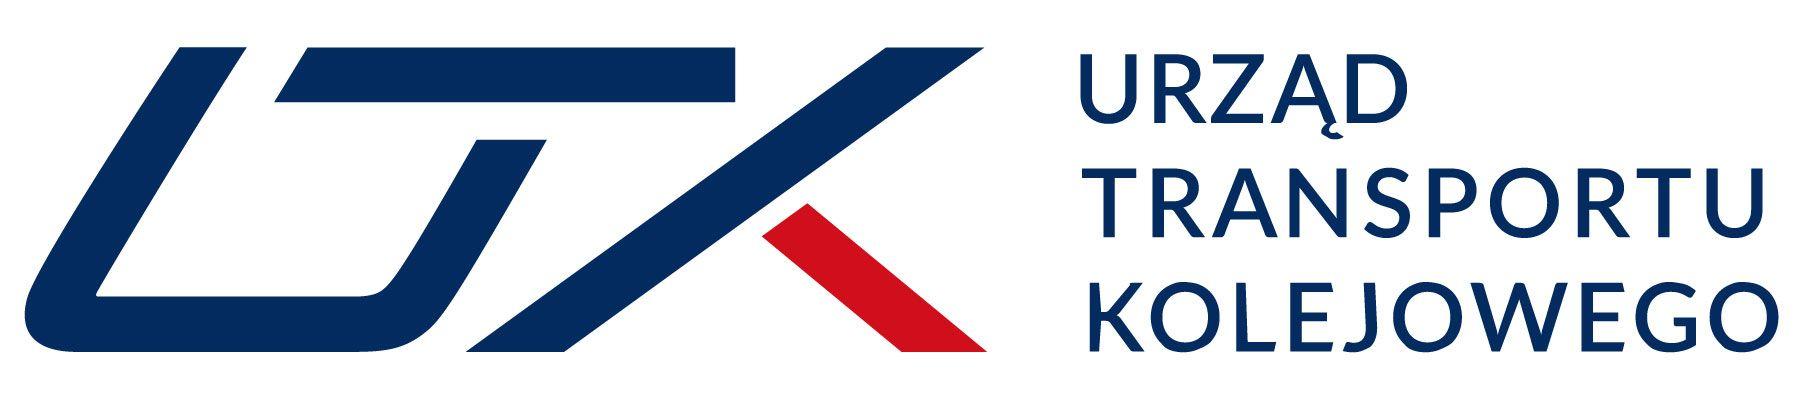 Utk Logo - Logo UTK